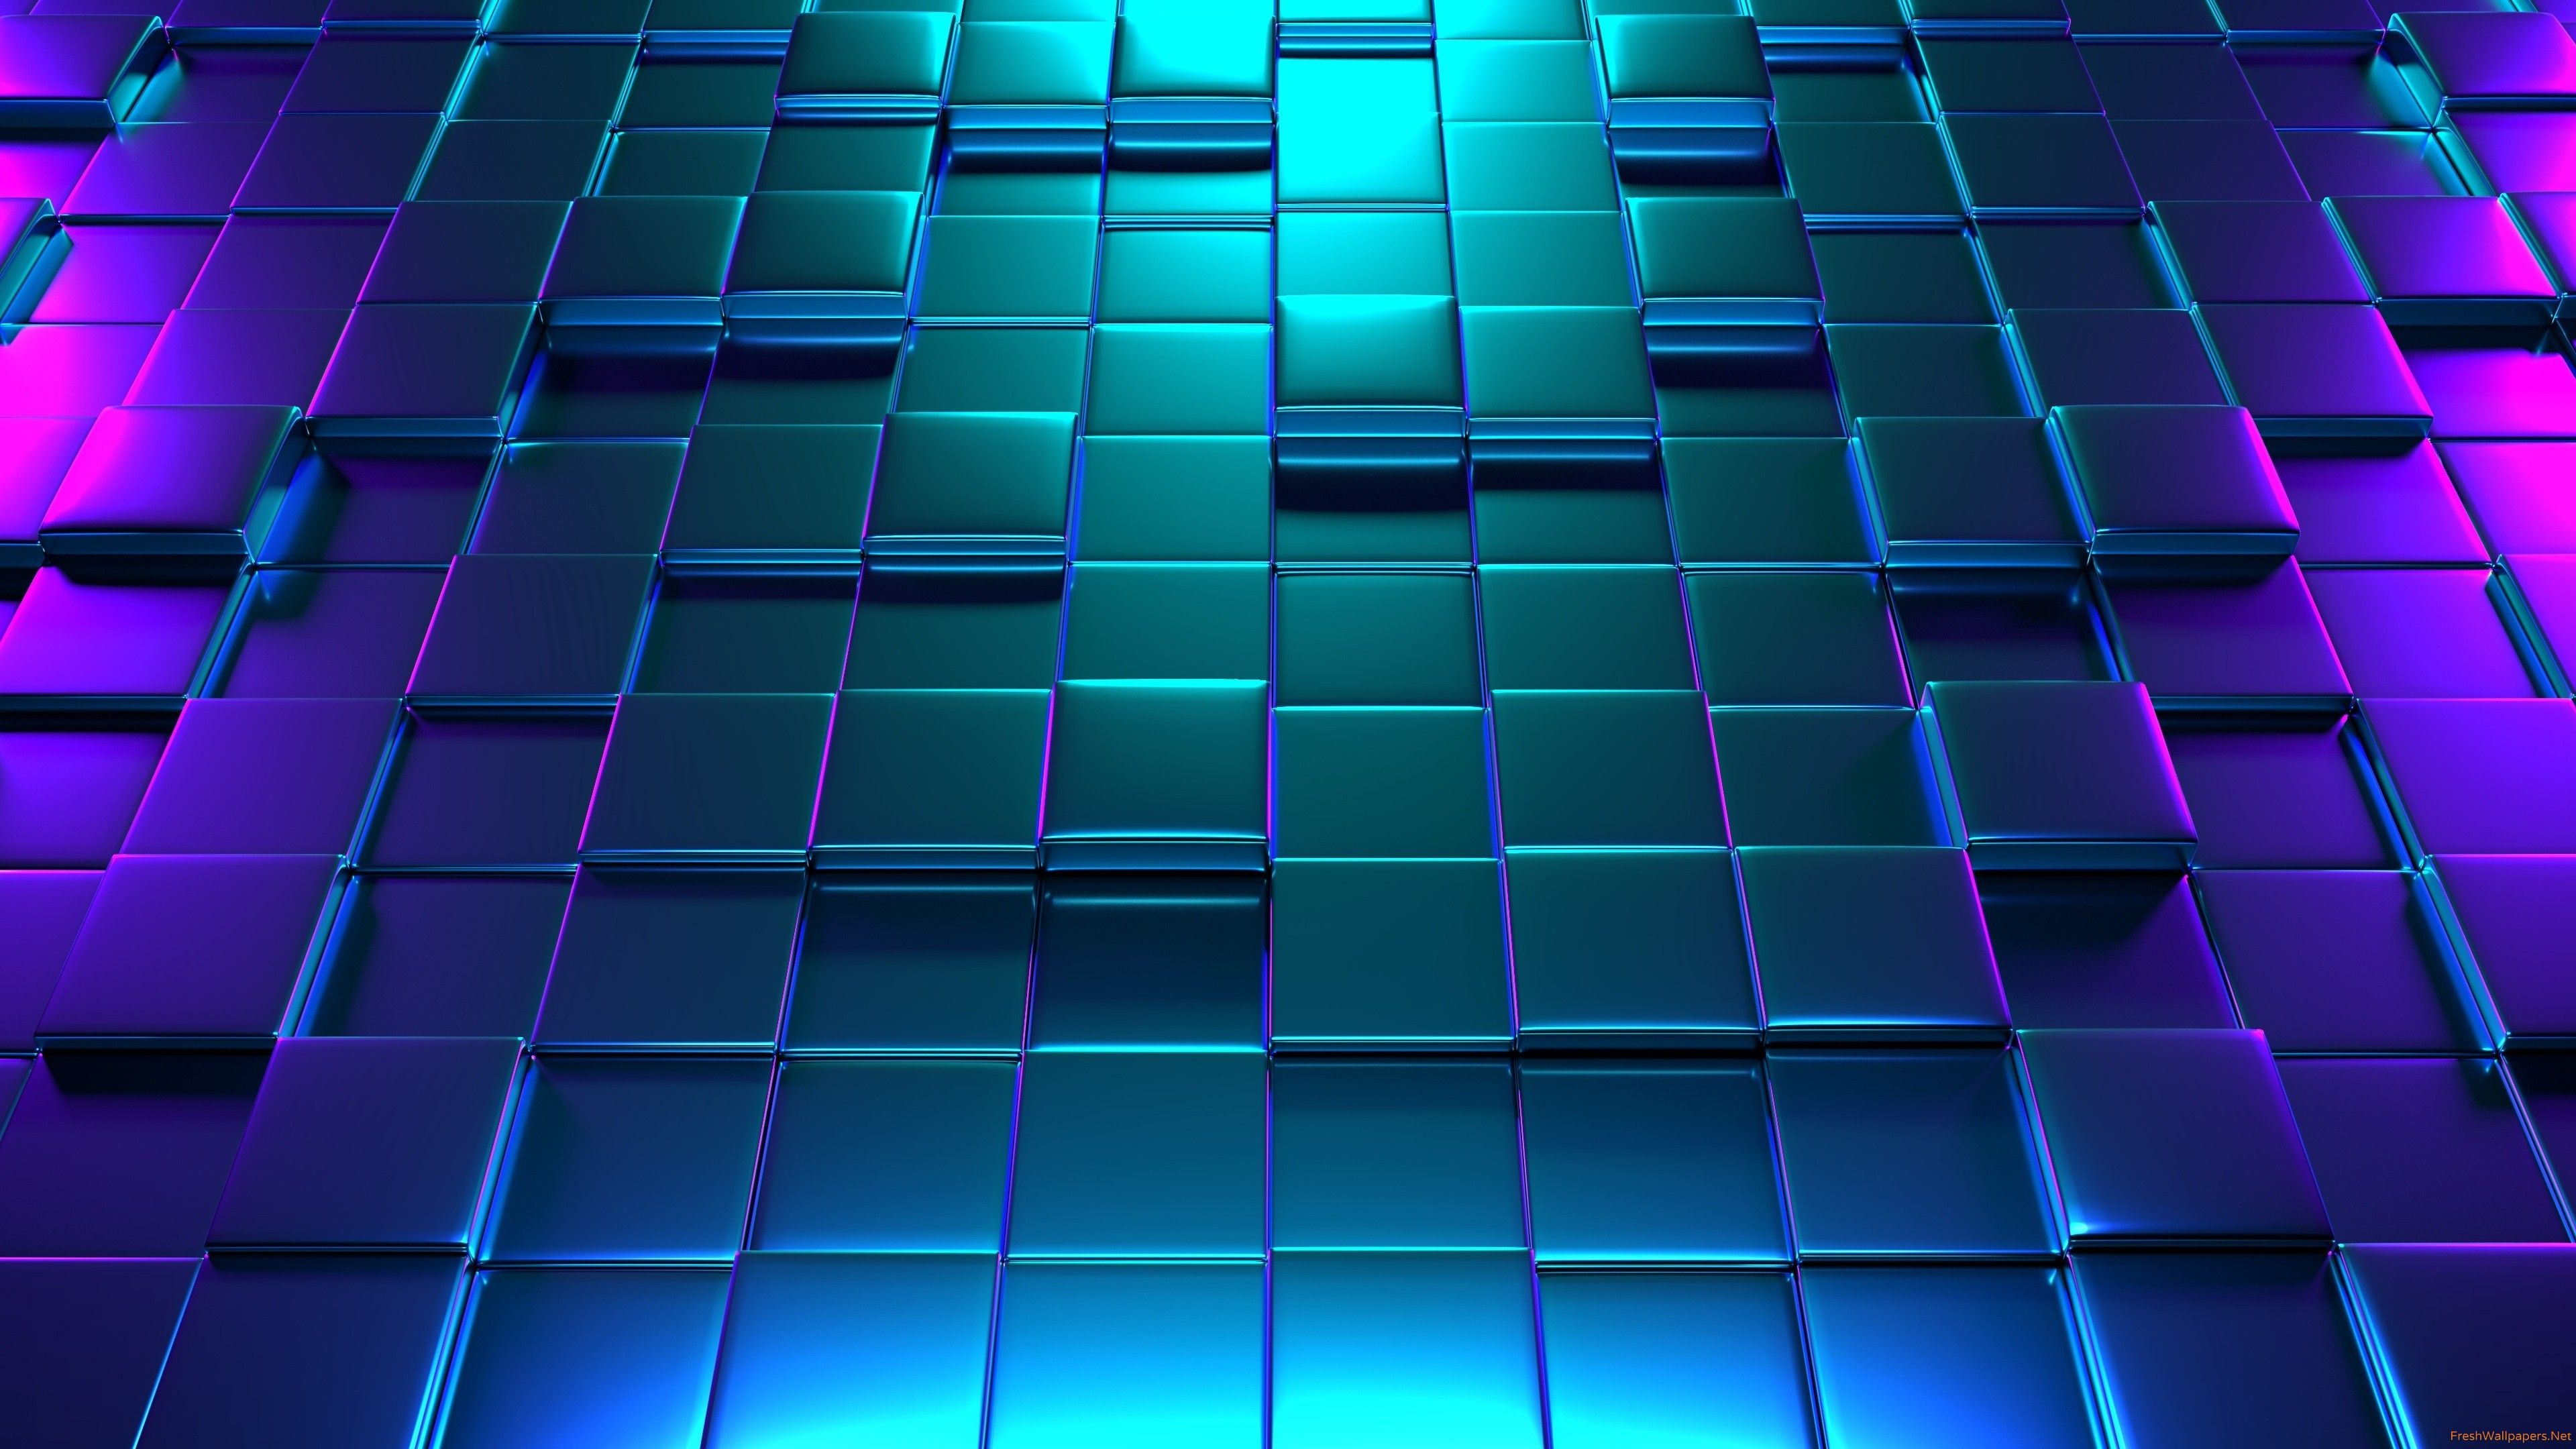 Hình nền 3D Neon 4k: Khám phá chi tiết sắc nét và màu sắc chân thực như đang sống trong không gian thực tế với hình nền 3D Neon 4k. Thiết kế độc đáo và hiệu ứng neon đẹp mắt sẽ khiến bạn say đắm.